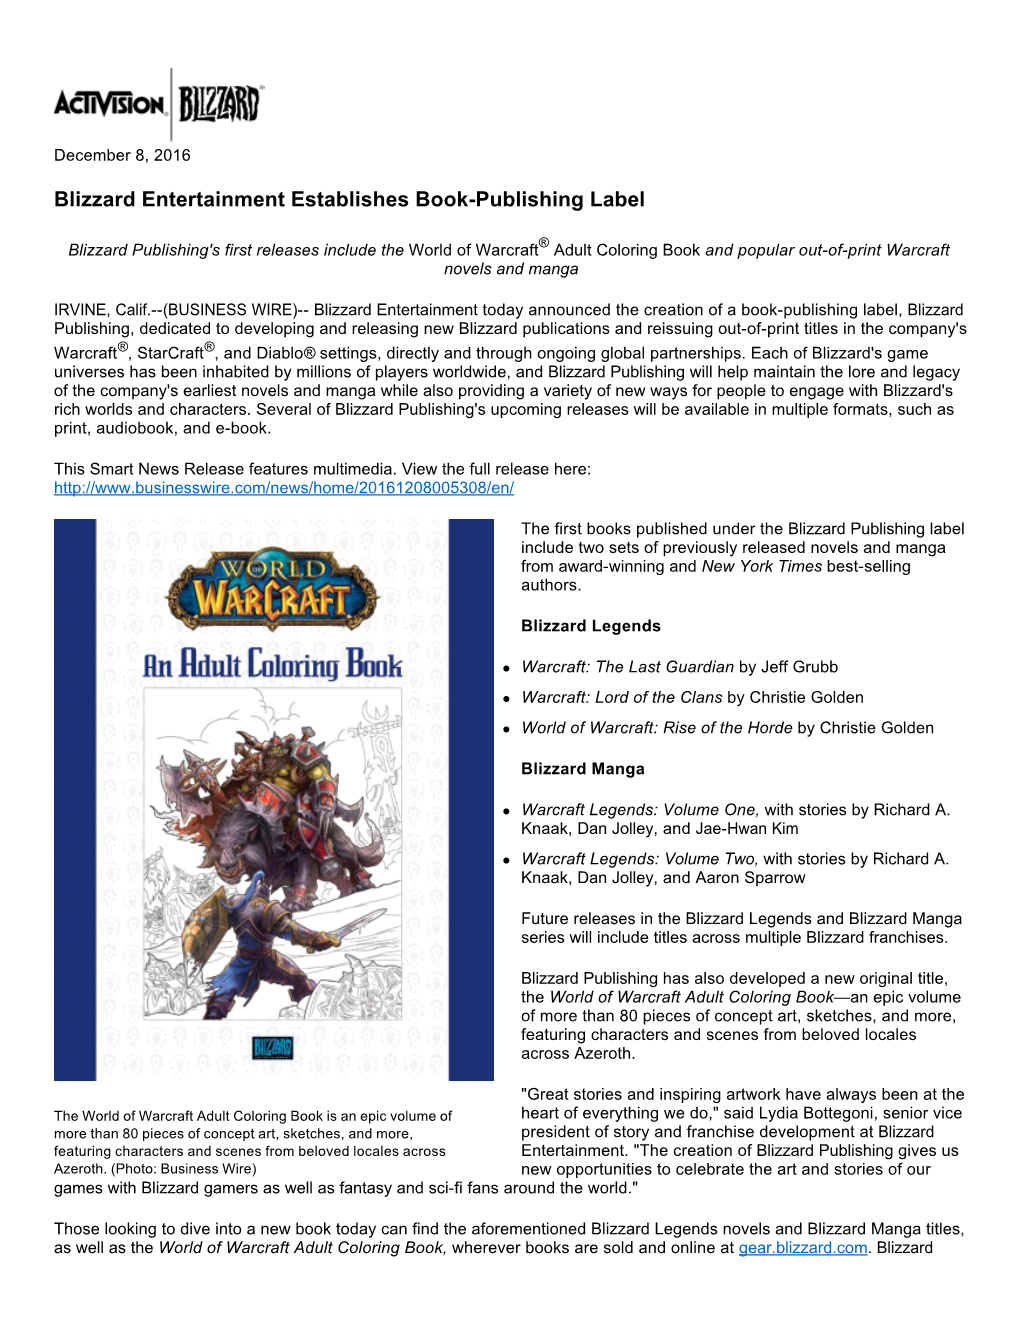 Blizzard Entertainment Establishes Book-Publishing Label